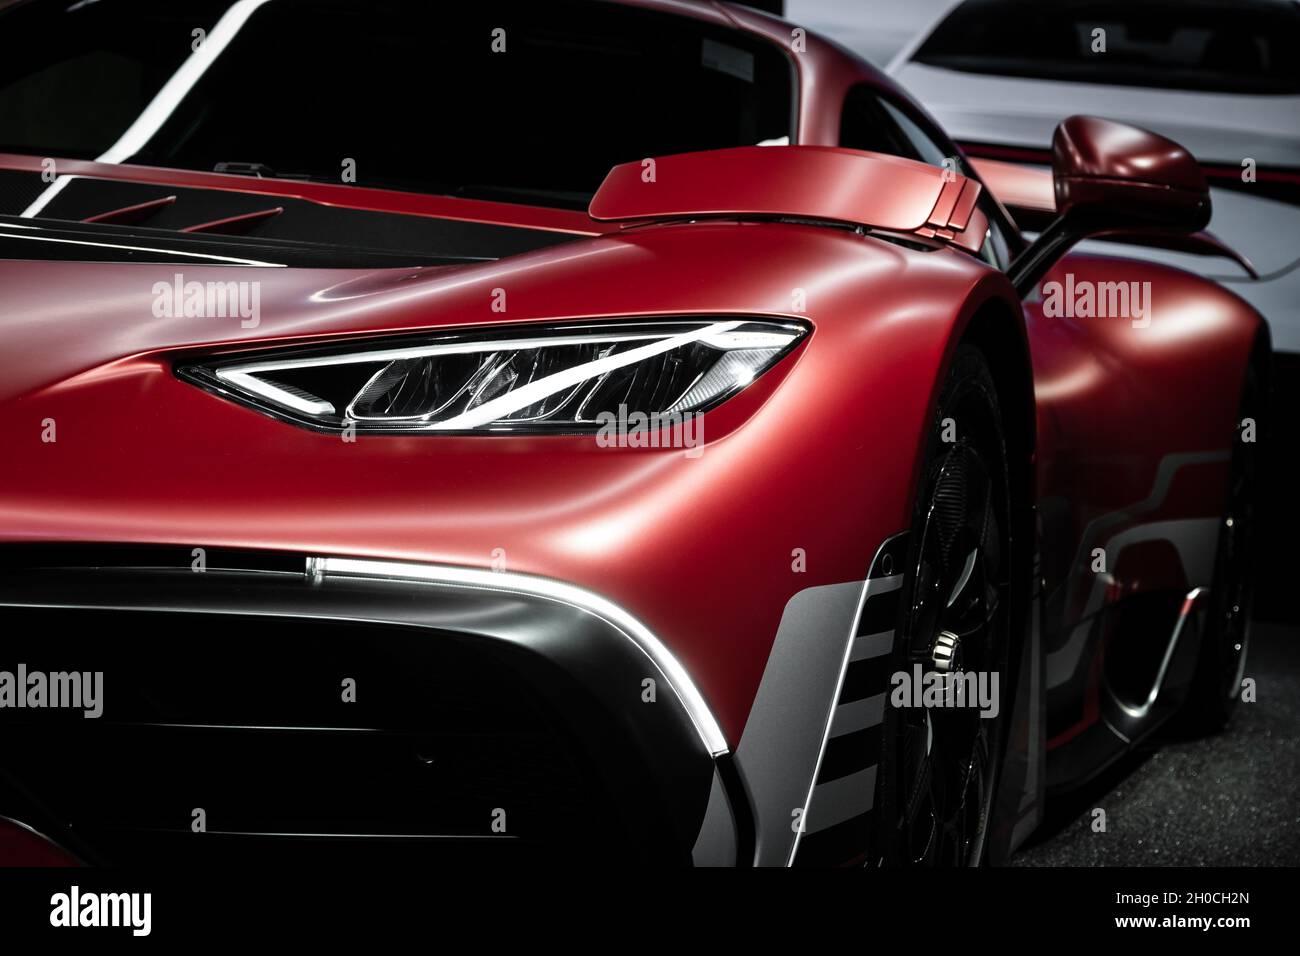 Mercedes-AMG Project One, une voiture de sport présentée au salon automobile IAA Mobility 2021 à Munich, en Allemagne, le 6 septembre 2021. Banque D'Images